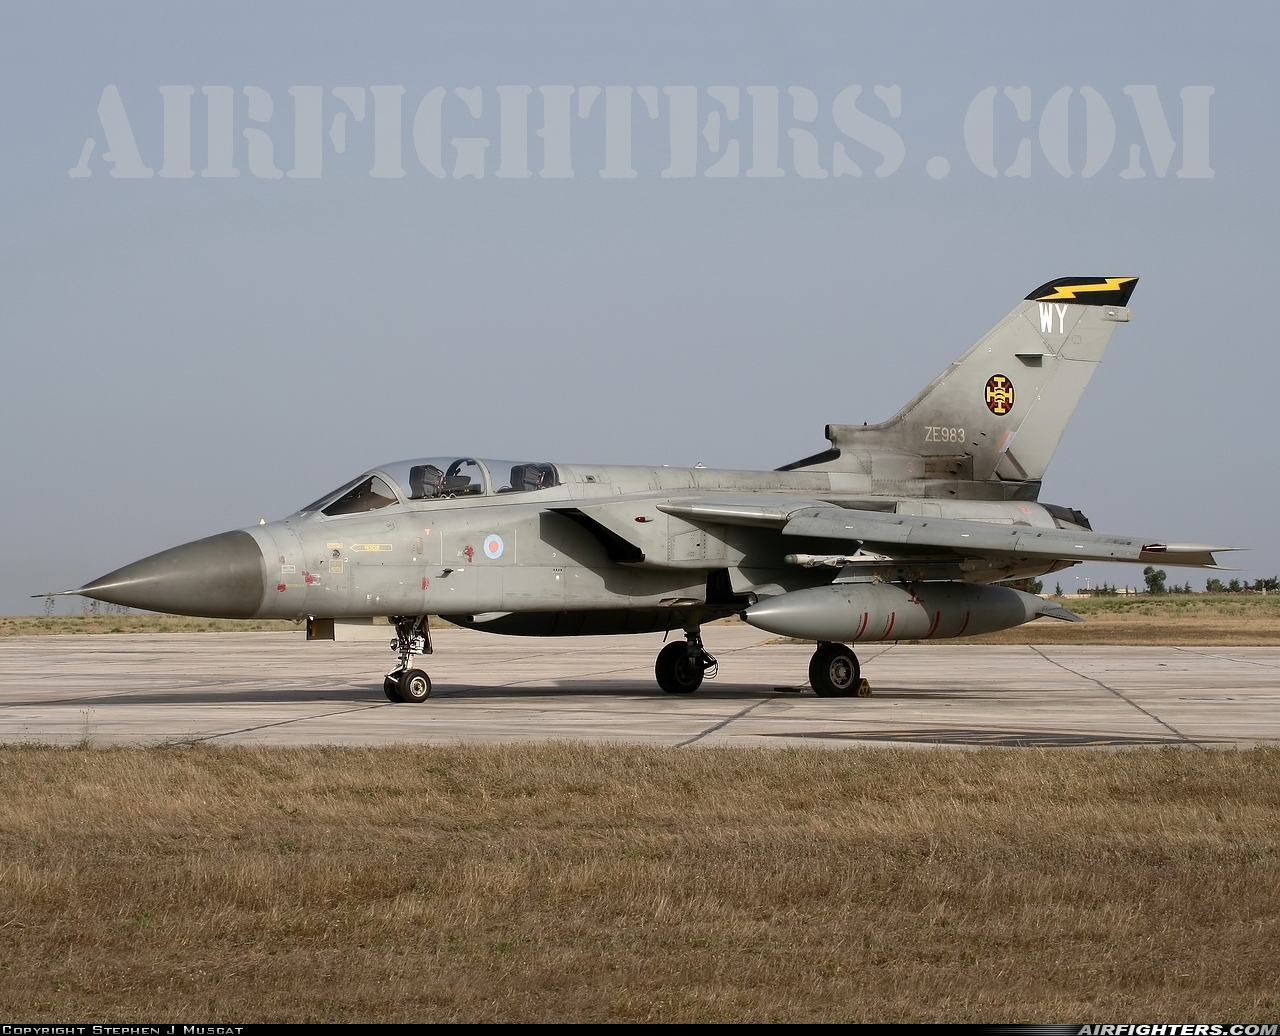 UK - Air Force Panavia Tornado F3 ZE983 at Luqa - Malta International (MLA / LMML), Malta